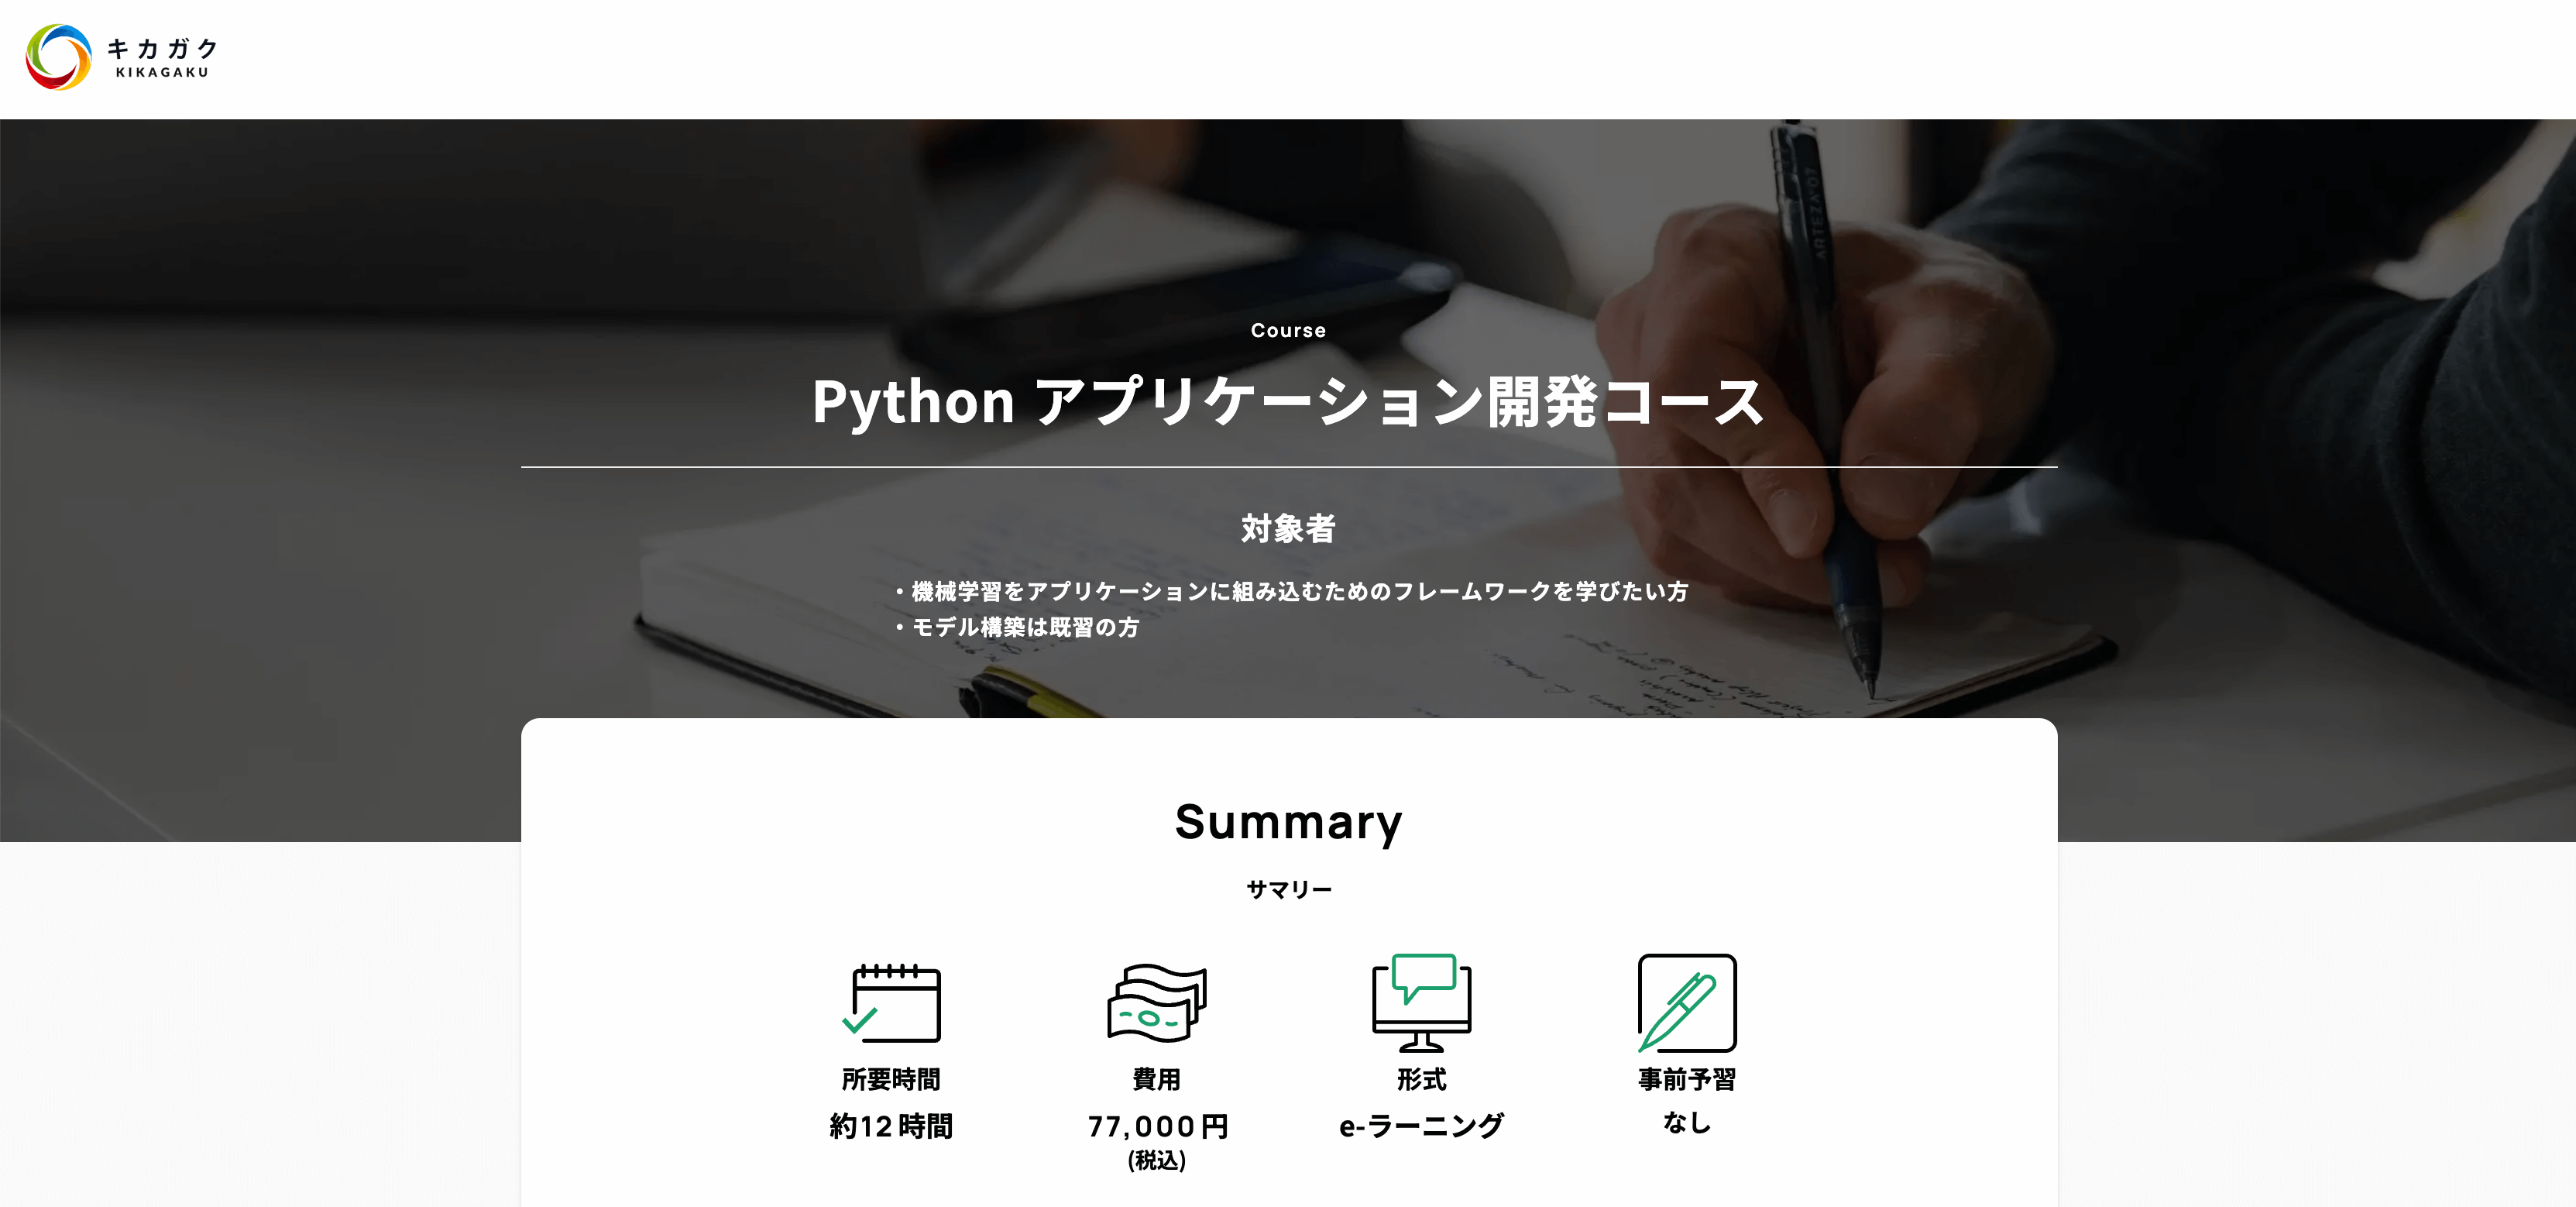 キカガク「Pythonアプリケーション開発コース」